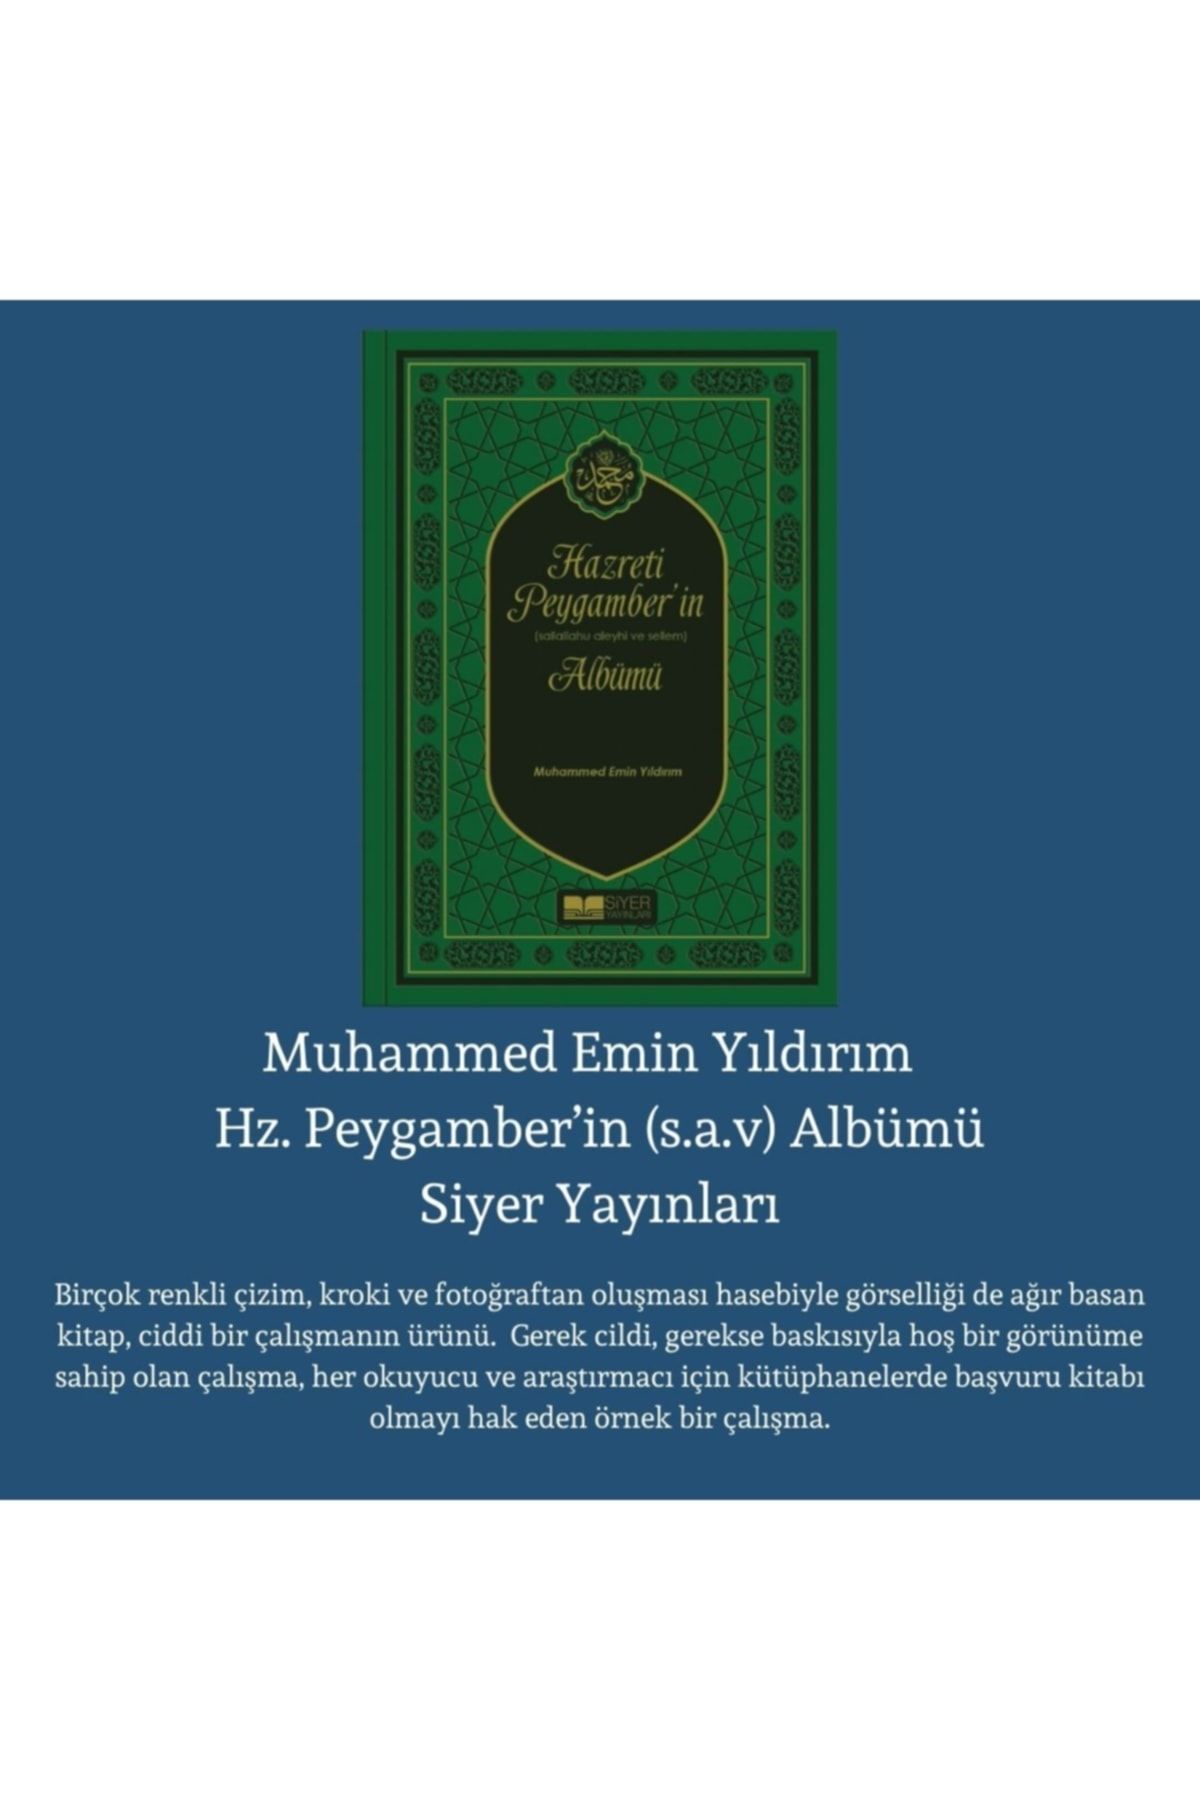 Siyer Yayınları Hazreti Peygamber’in Sallahu Aleyhi ve Sellem Albümü